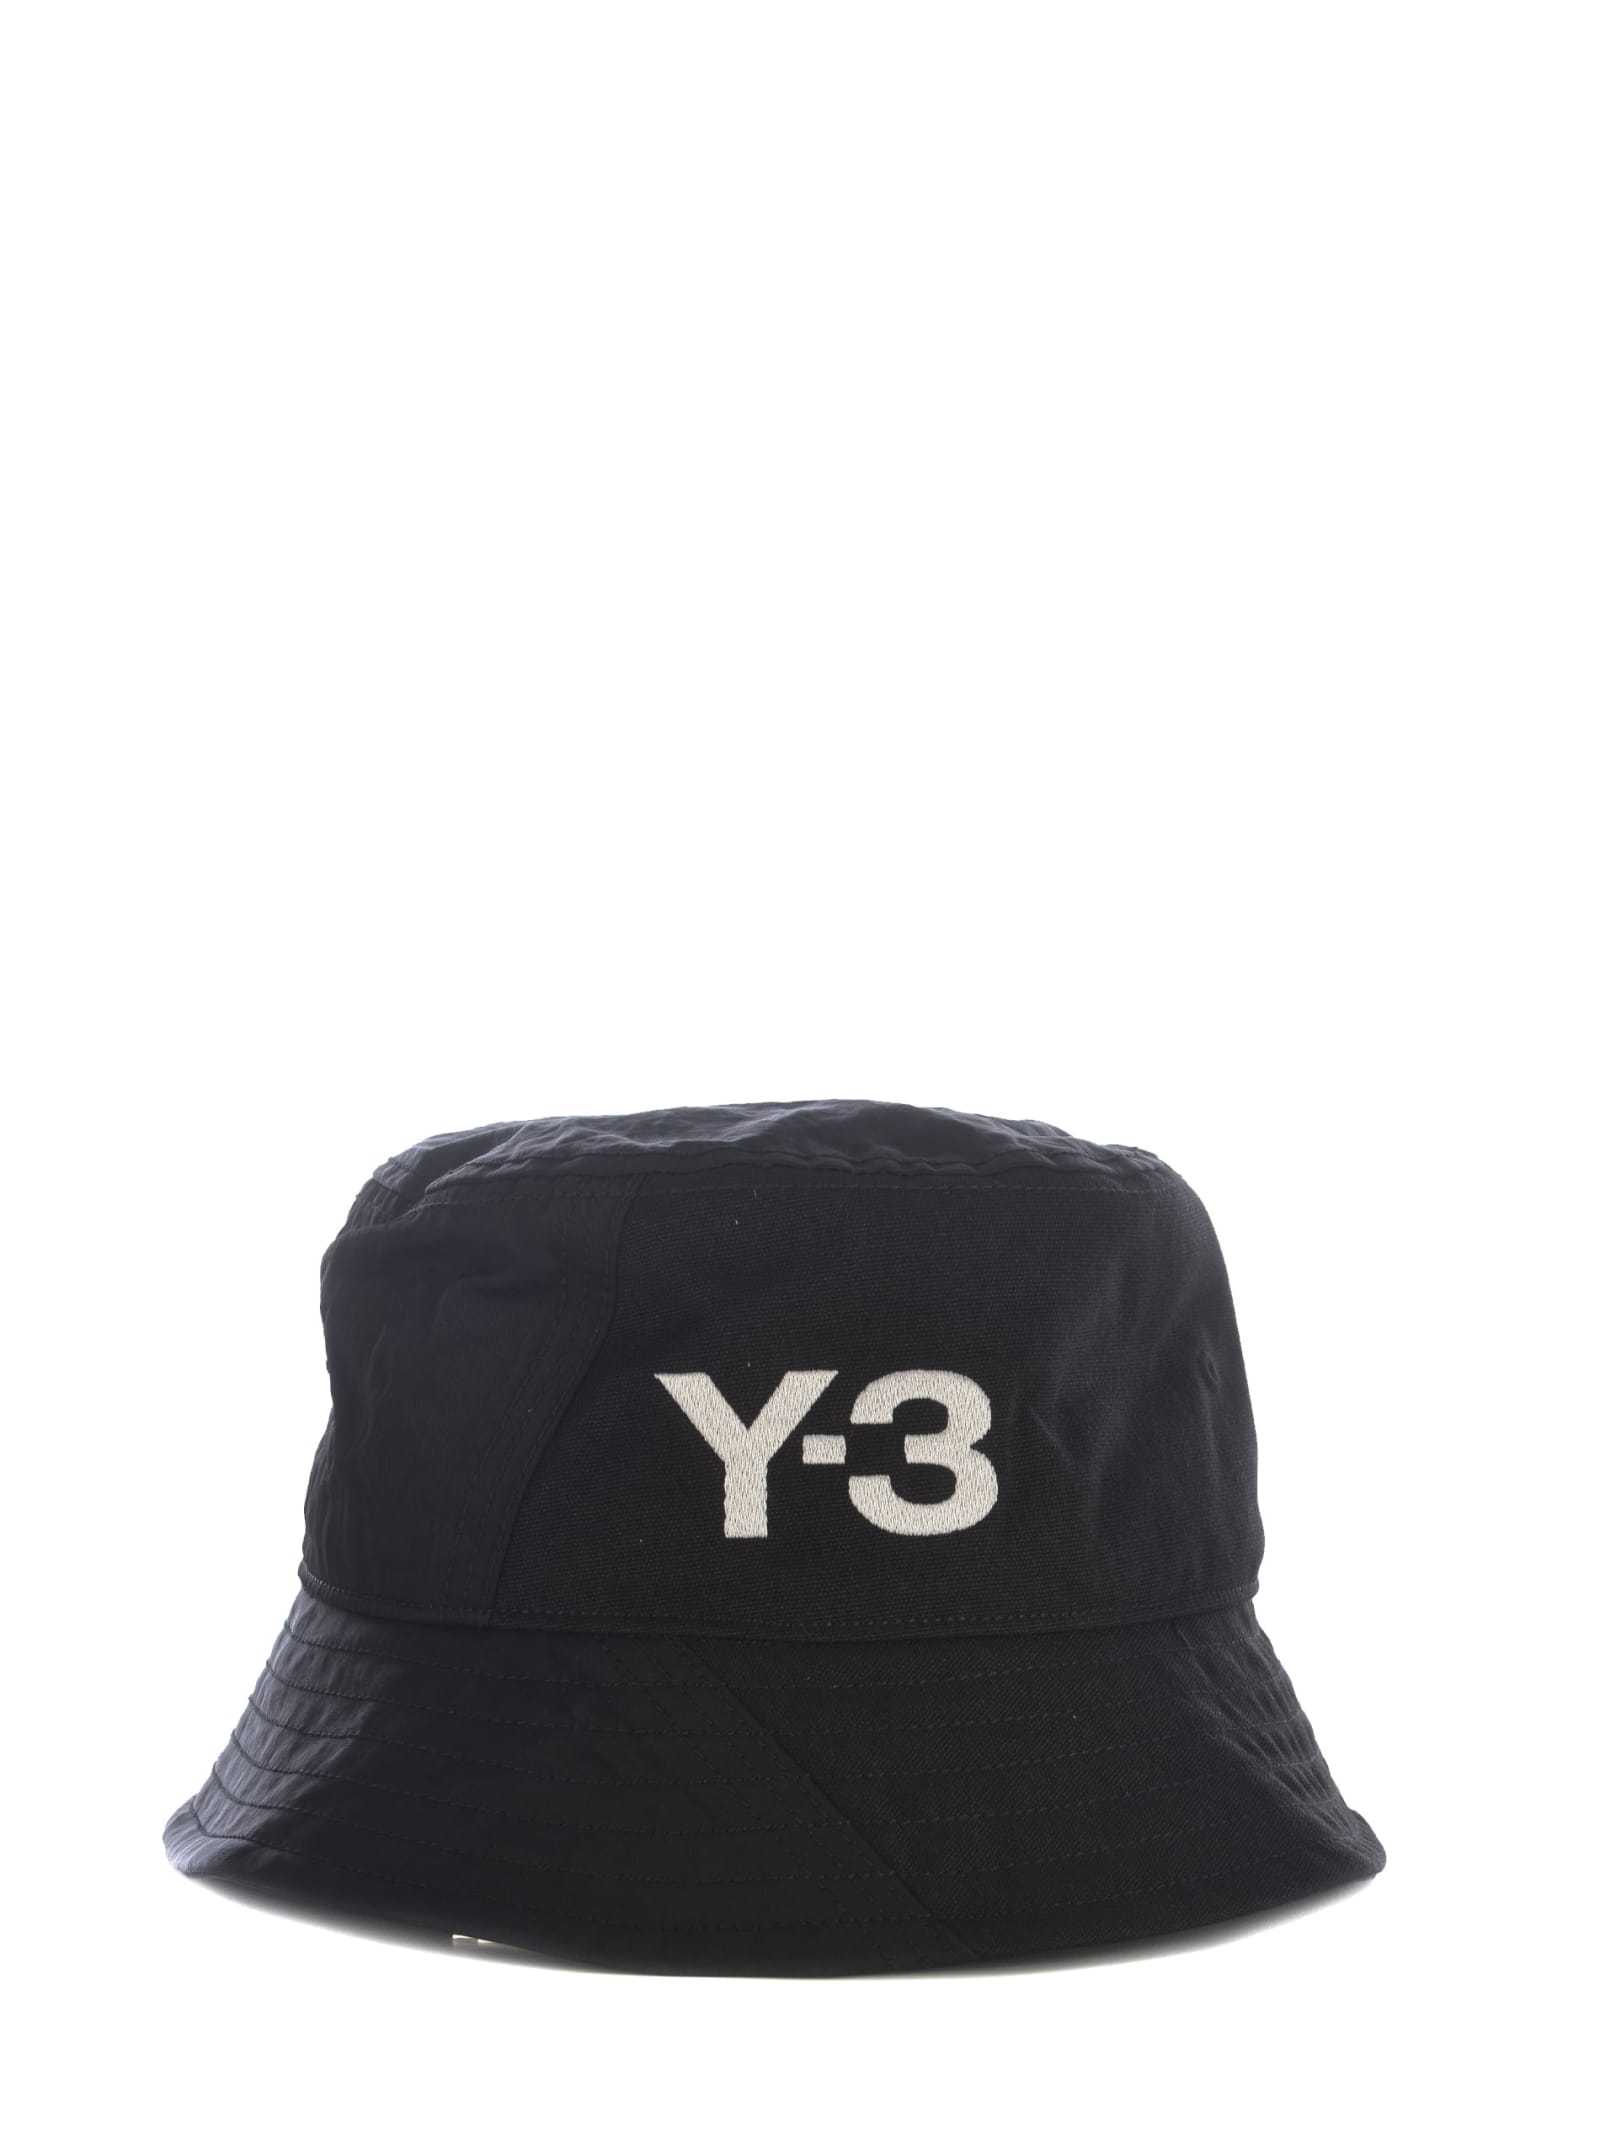 Y-3 CAP Y-3 IN NYLON